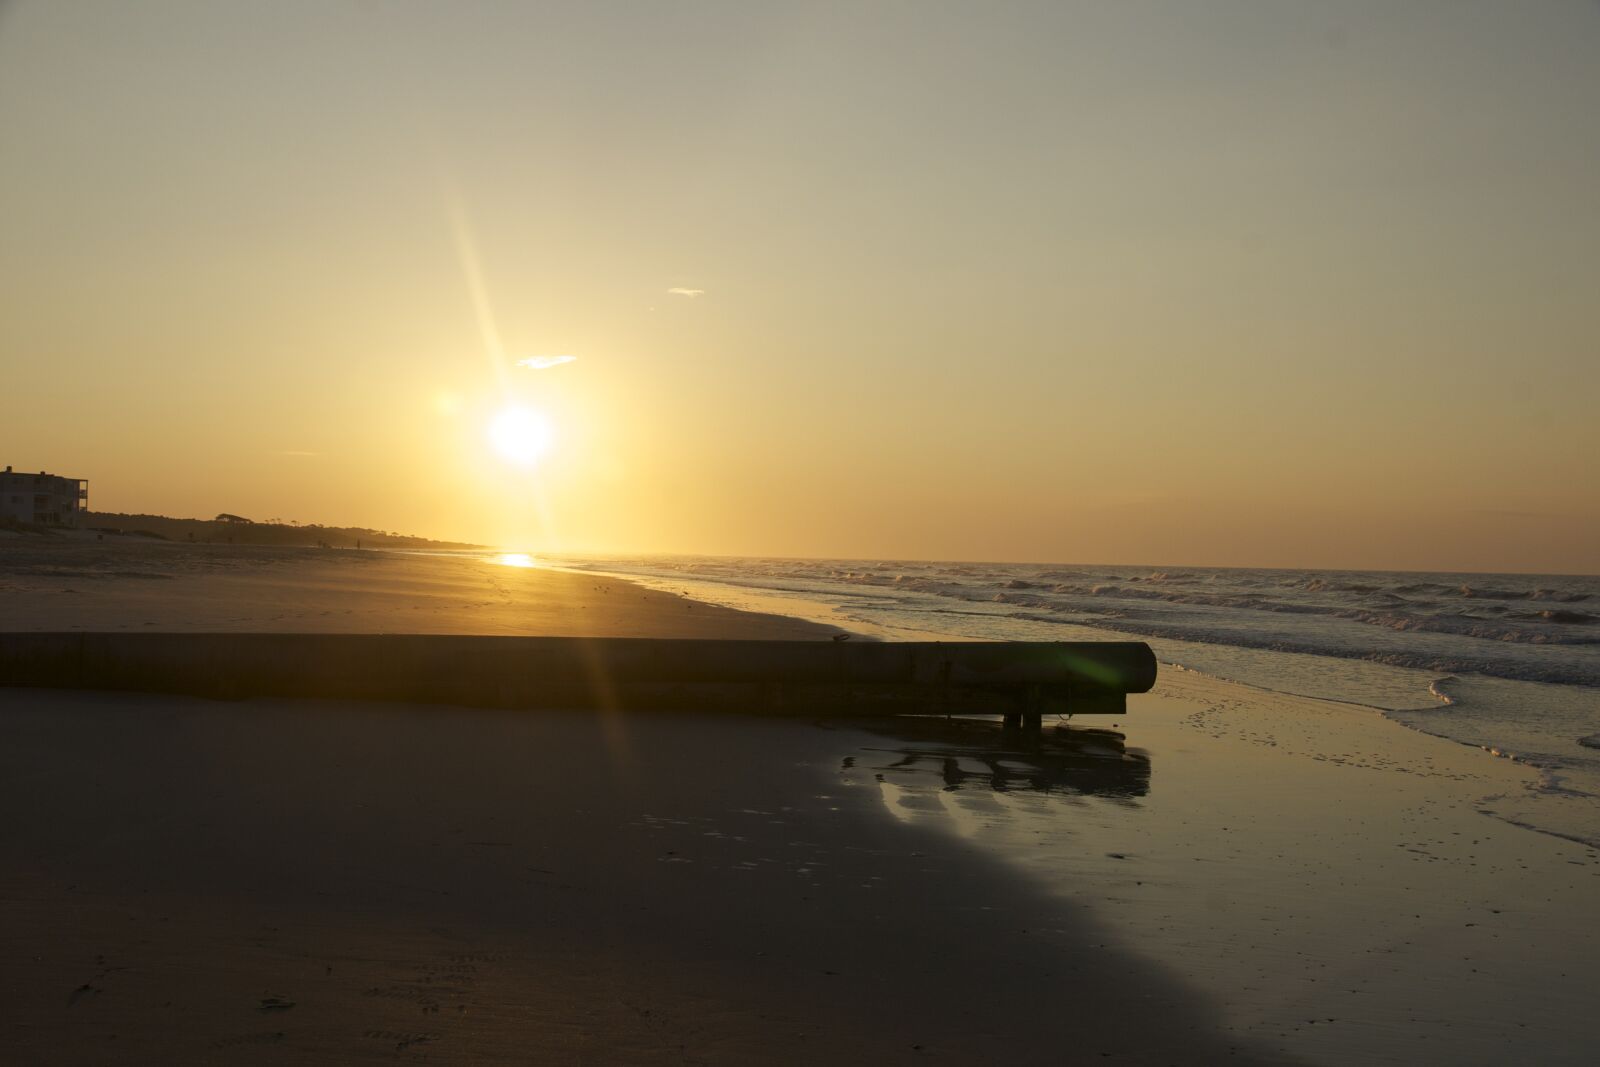 Sony Alpha DSLR-A700 sample photo. Beach, sunrise, ocean photography